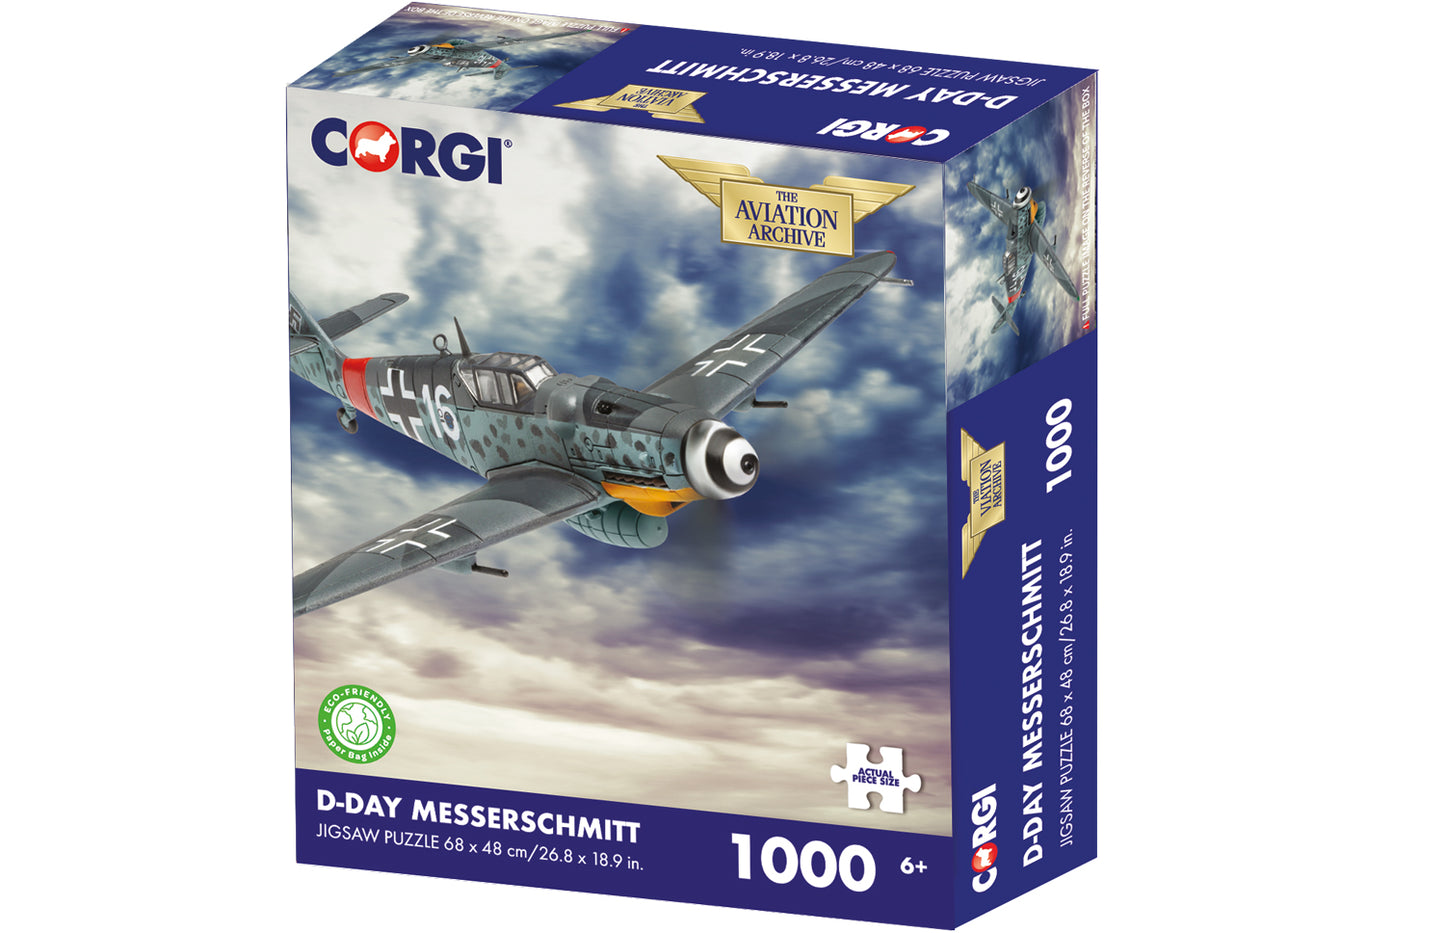 D-Day Messerschmitt 1000pc Corgi Jigsaw Puzzle - Chester Model Centre